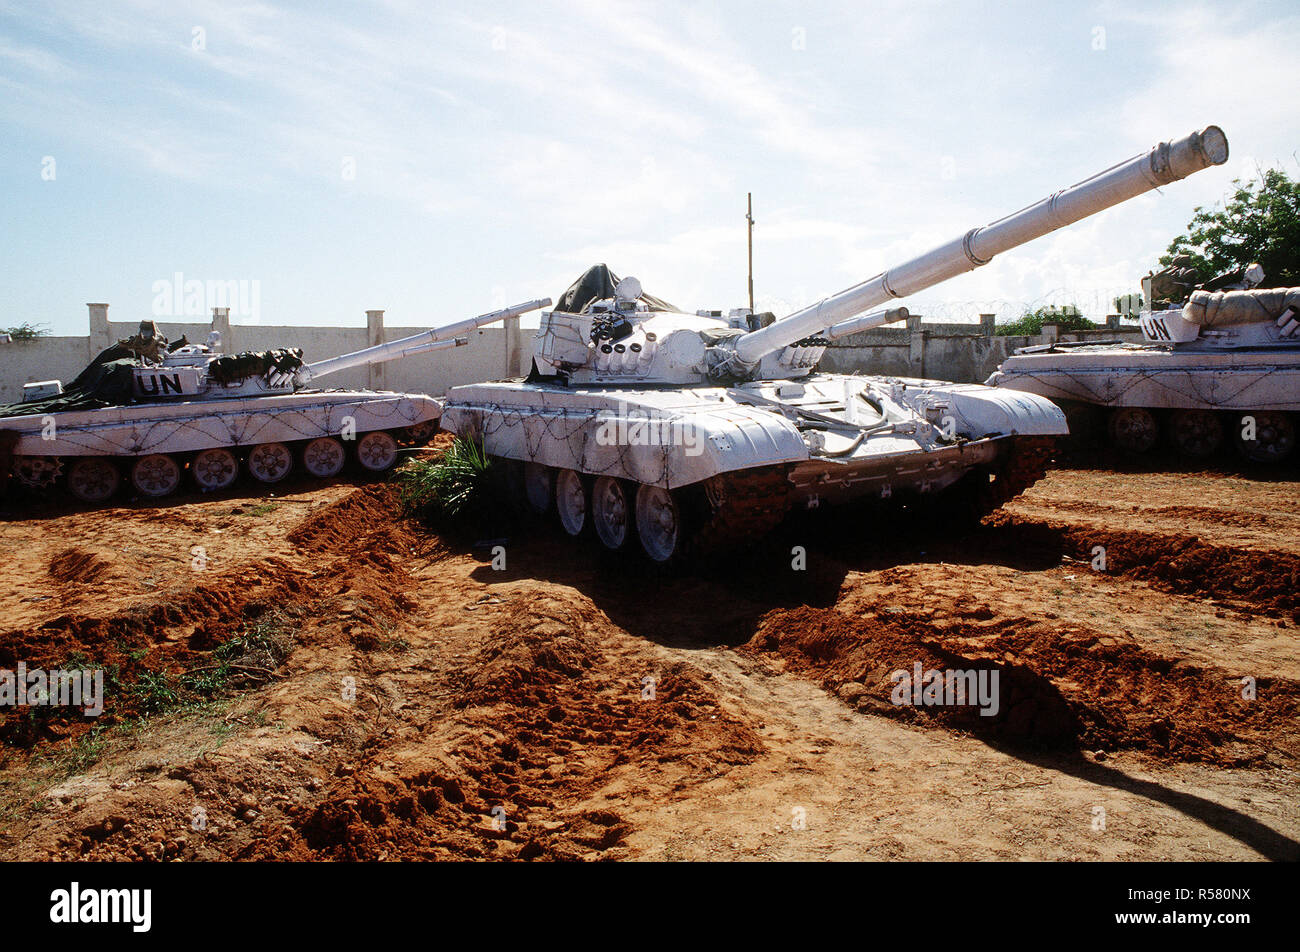 Nazioni Unite serbatoi presso il belga composto in Kismayo. 3/4 vista laterale destra di un T-72 battaglia principale serbatoio con marcature DELLE NAZIONI UNITE. Le forze delle Nazioni Unite sono in Somalia a sostegno di funzionamento continua a sperare. Foto Stock